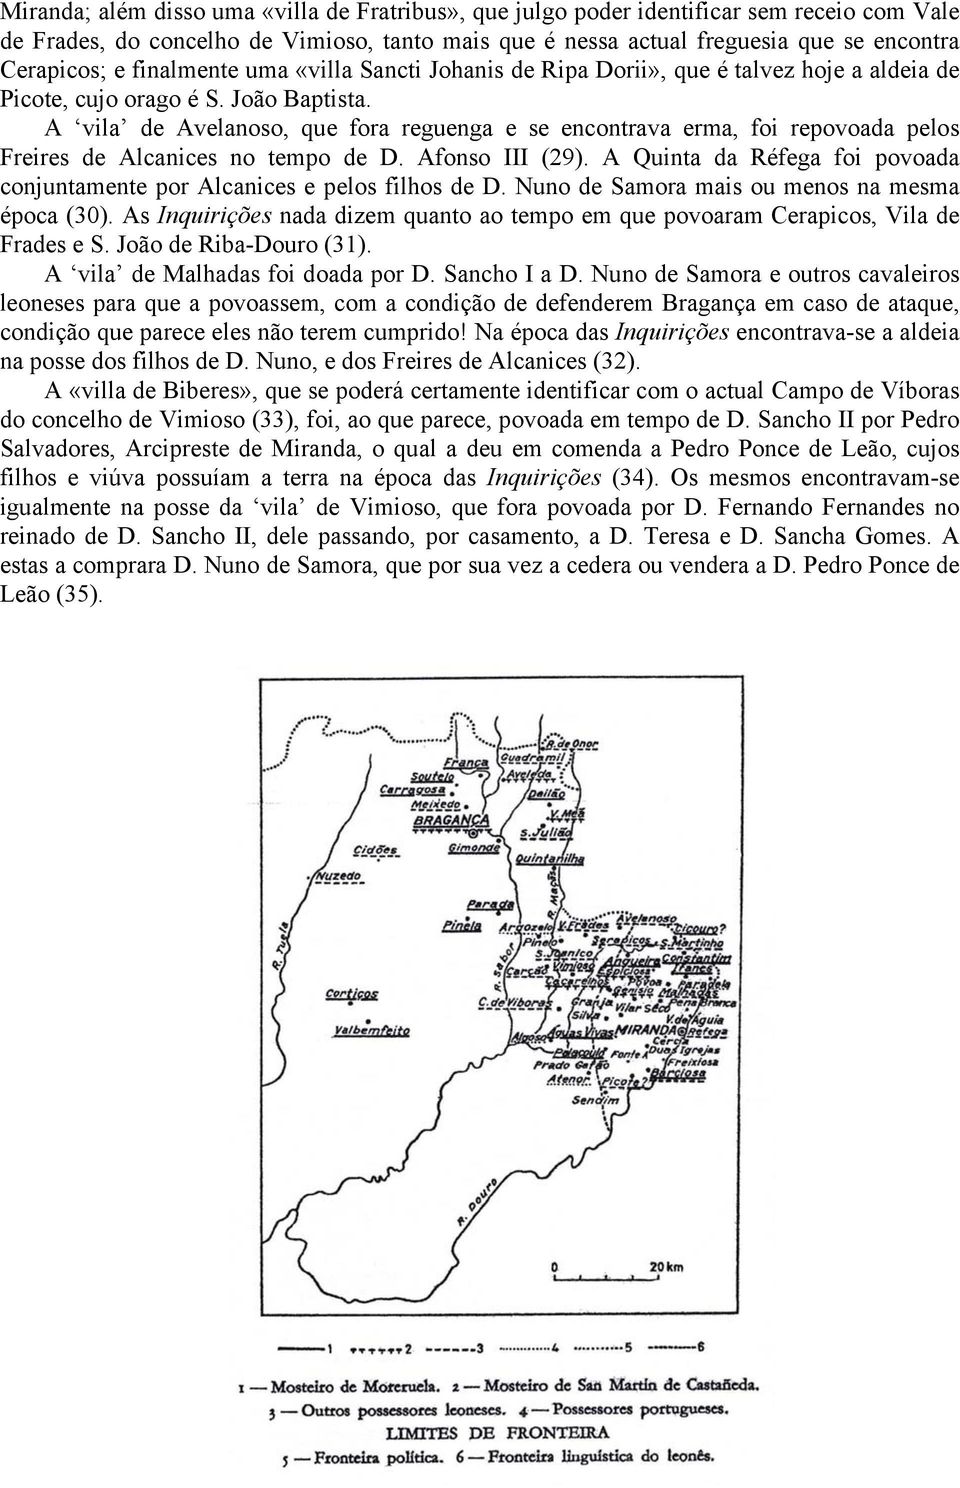 A vila de Avelanoso, que fora reguenga e se encontrava erma, foi repovoada pelos Freires de Alcanices no tempo de D. Afonso III (29).